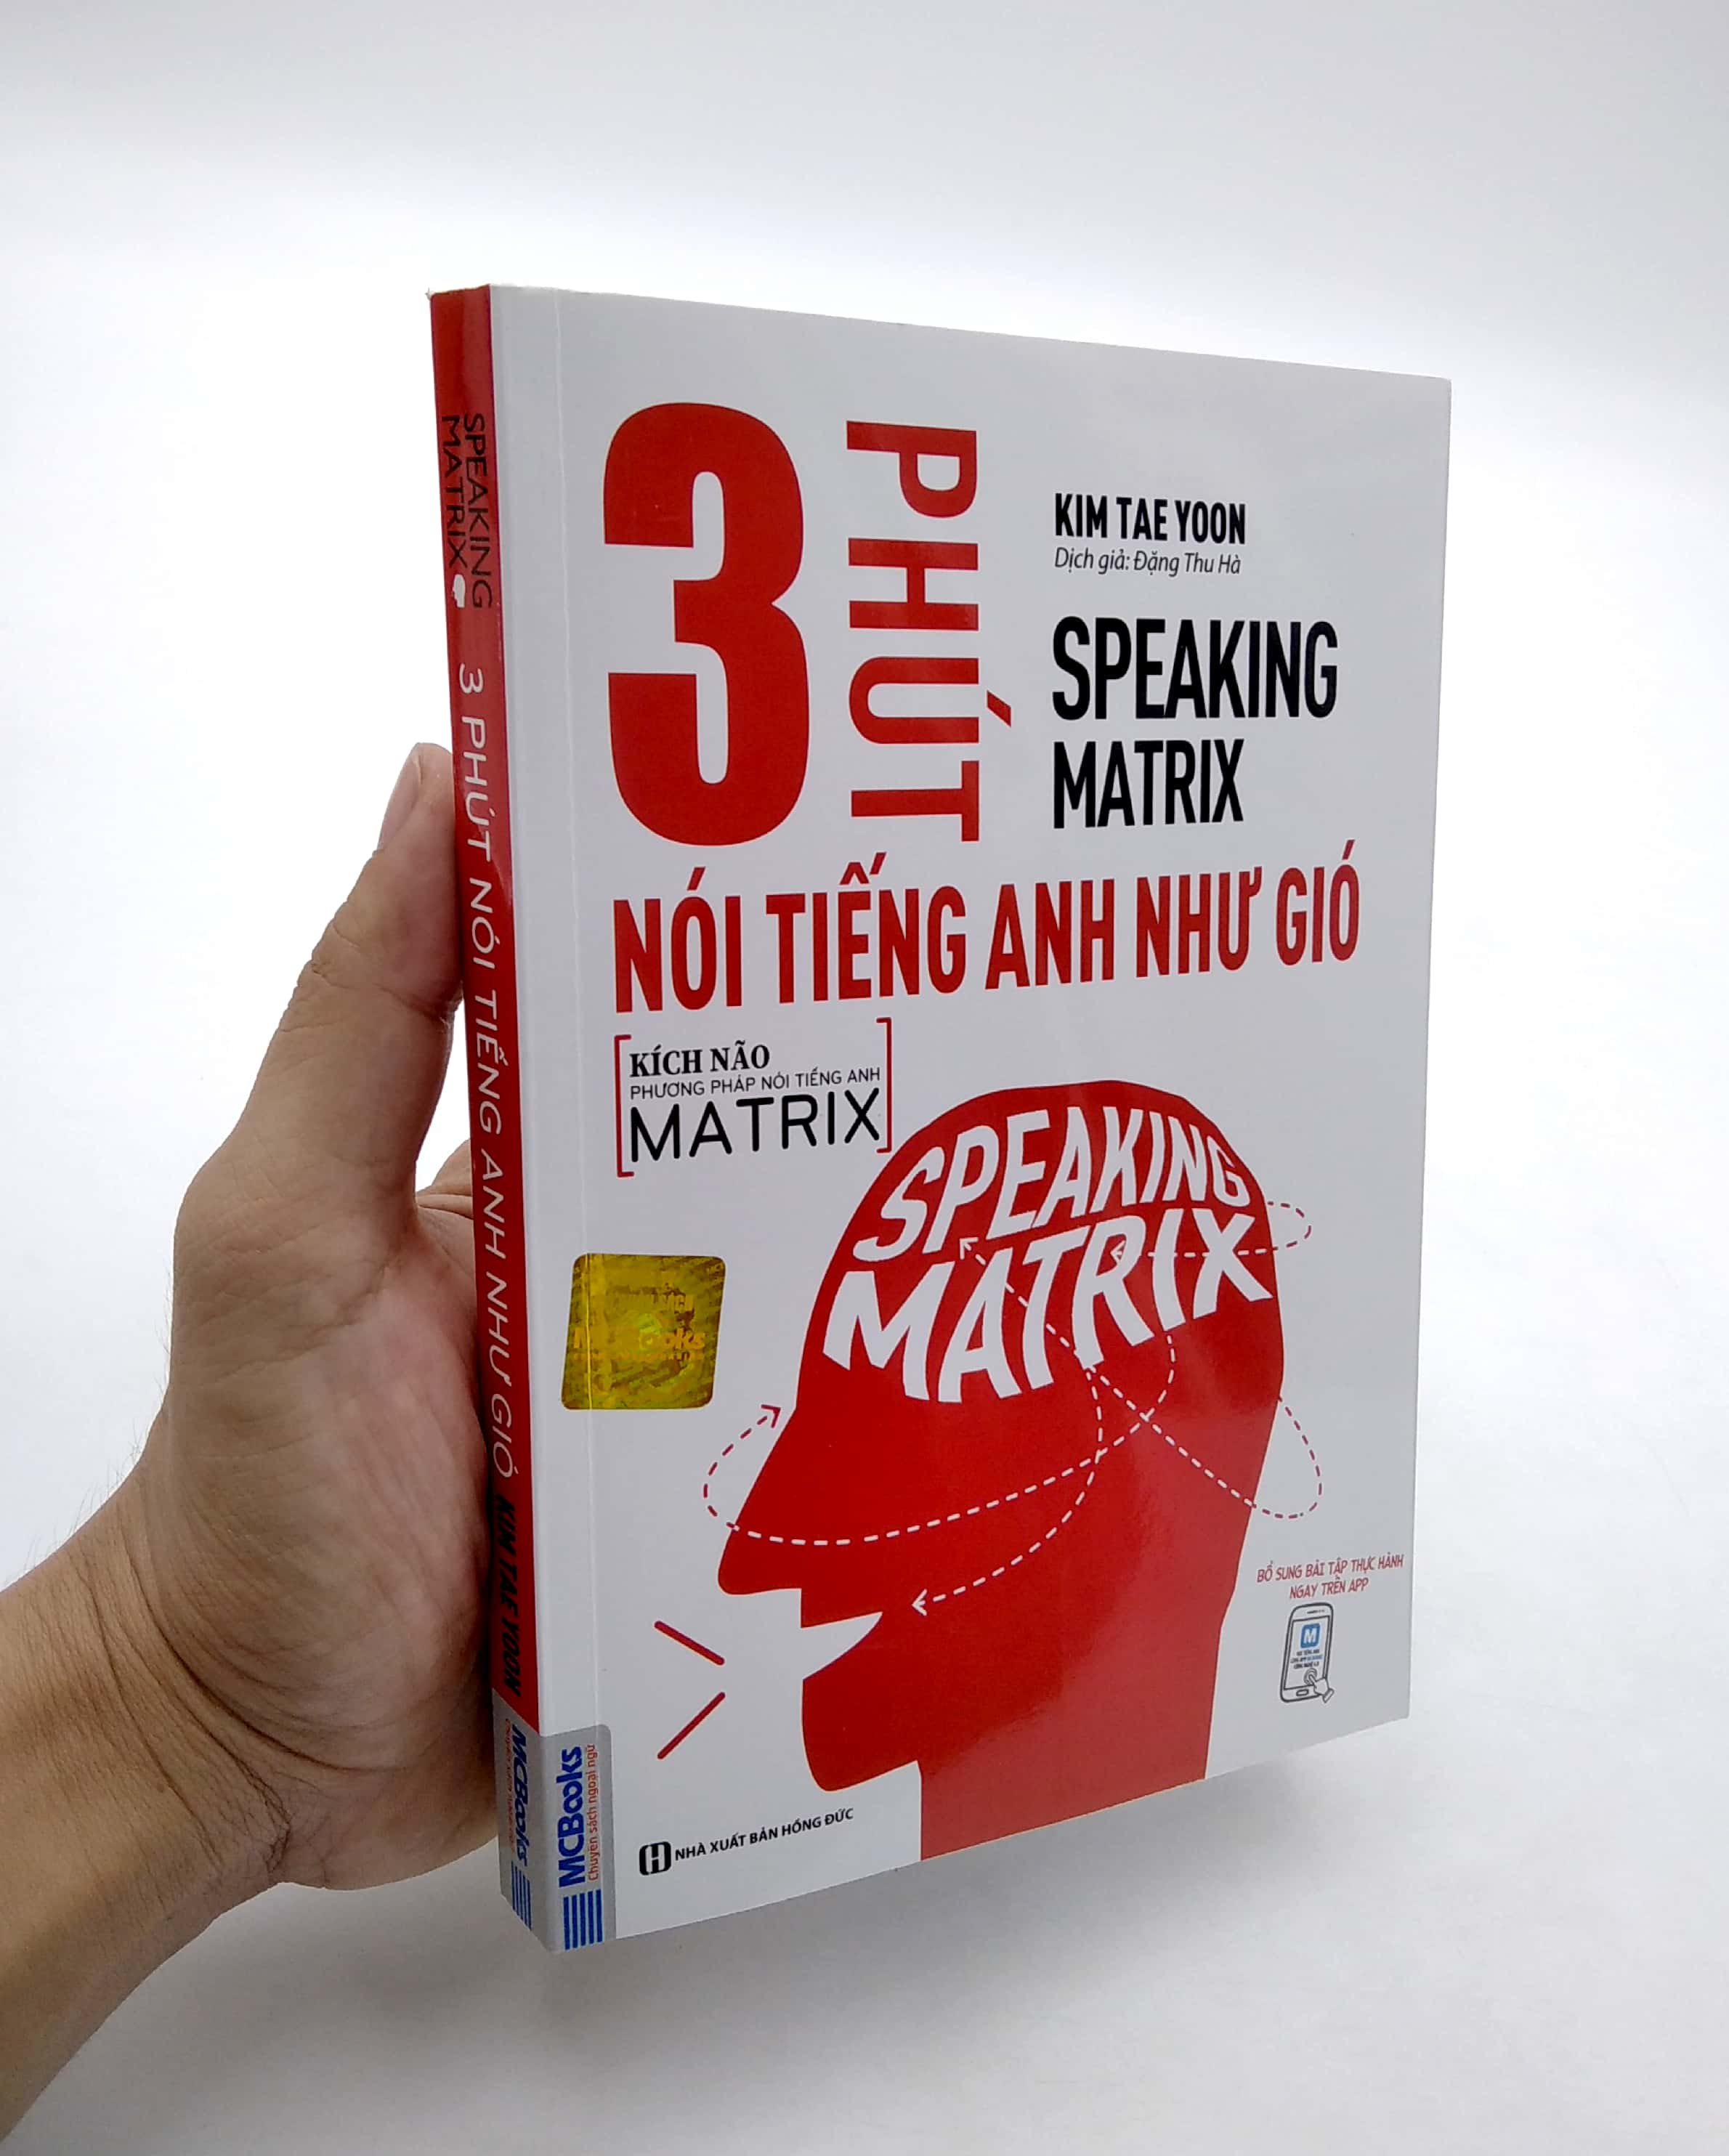 Speaking Matrix - 3 Phút Nói Tiếng Anh Như Gió PDF